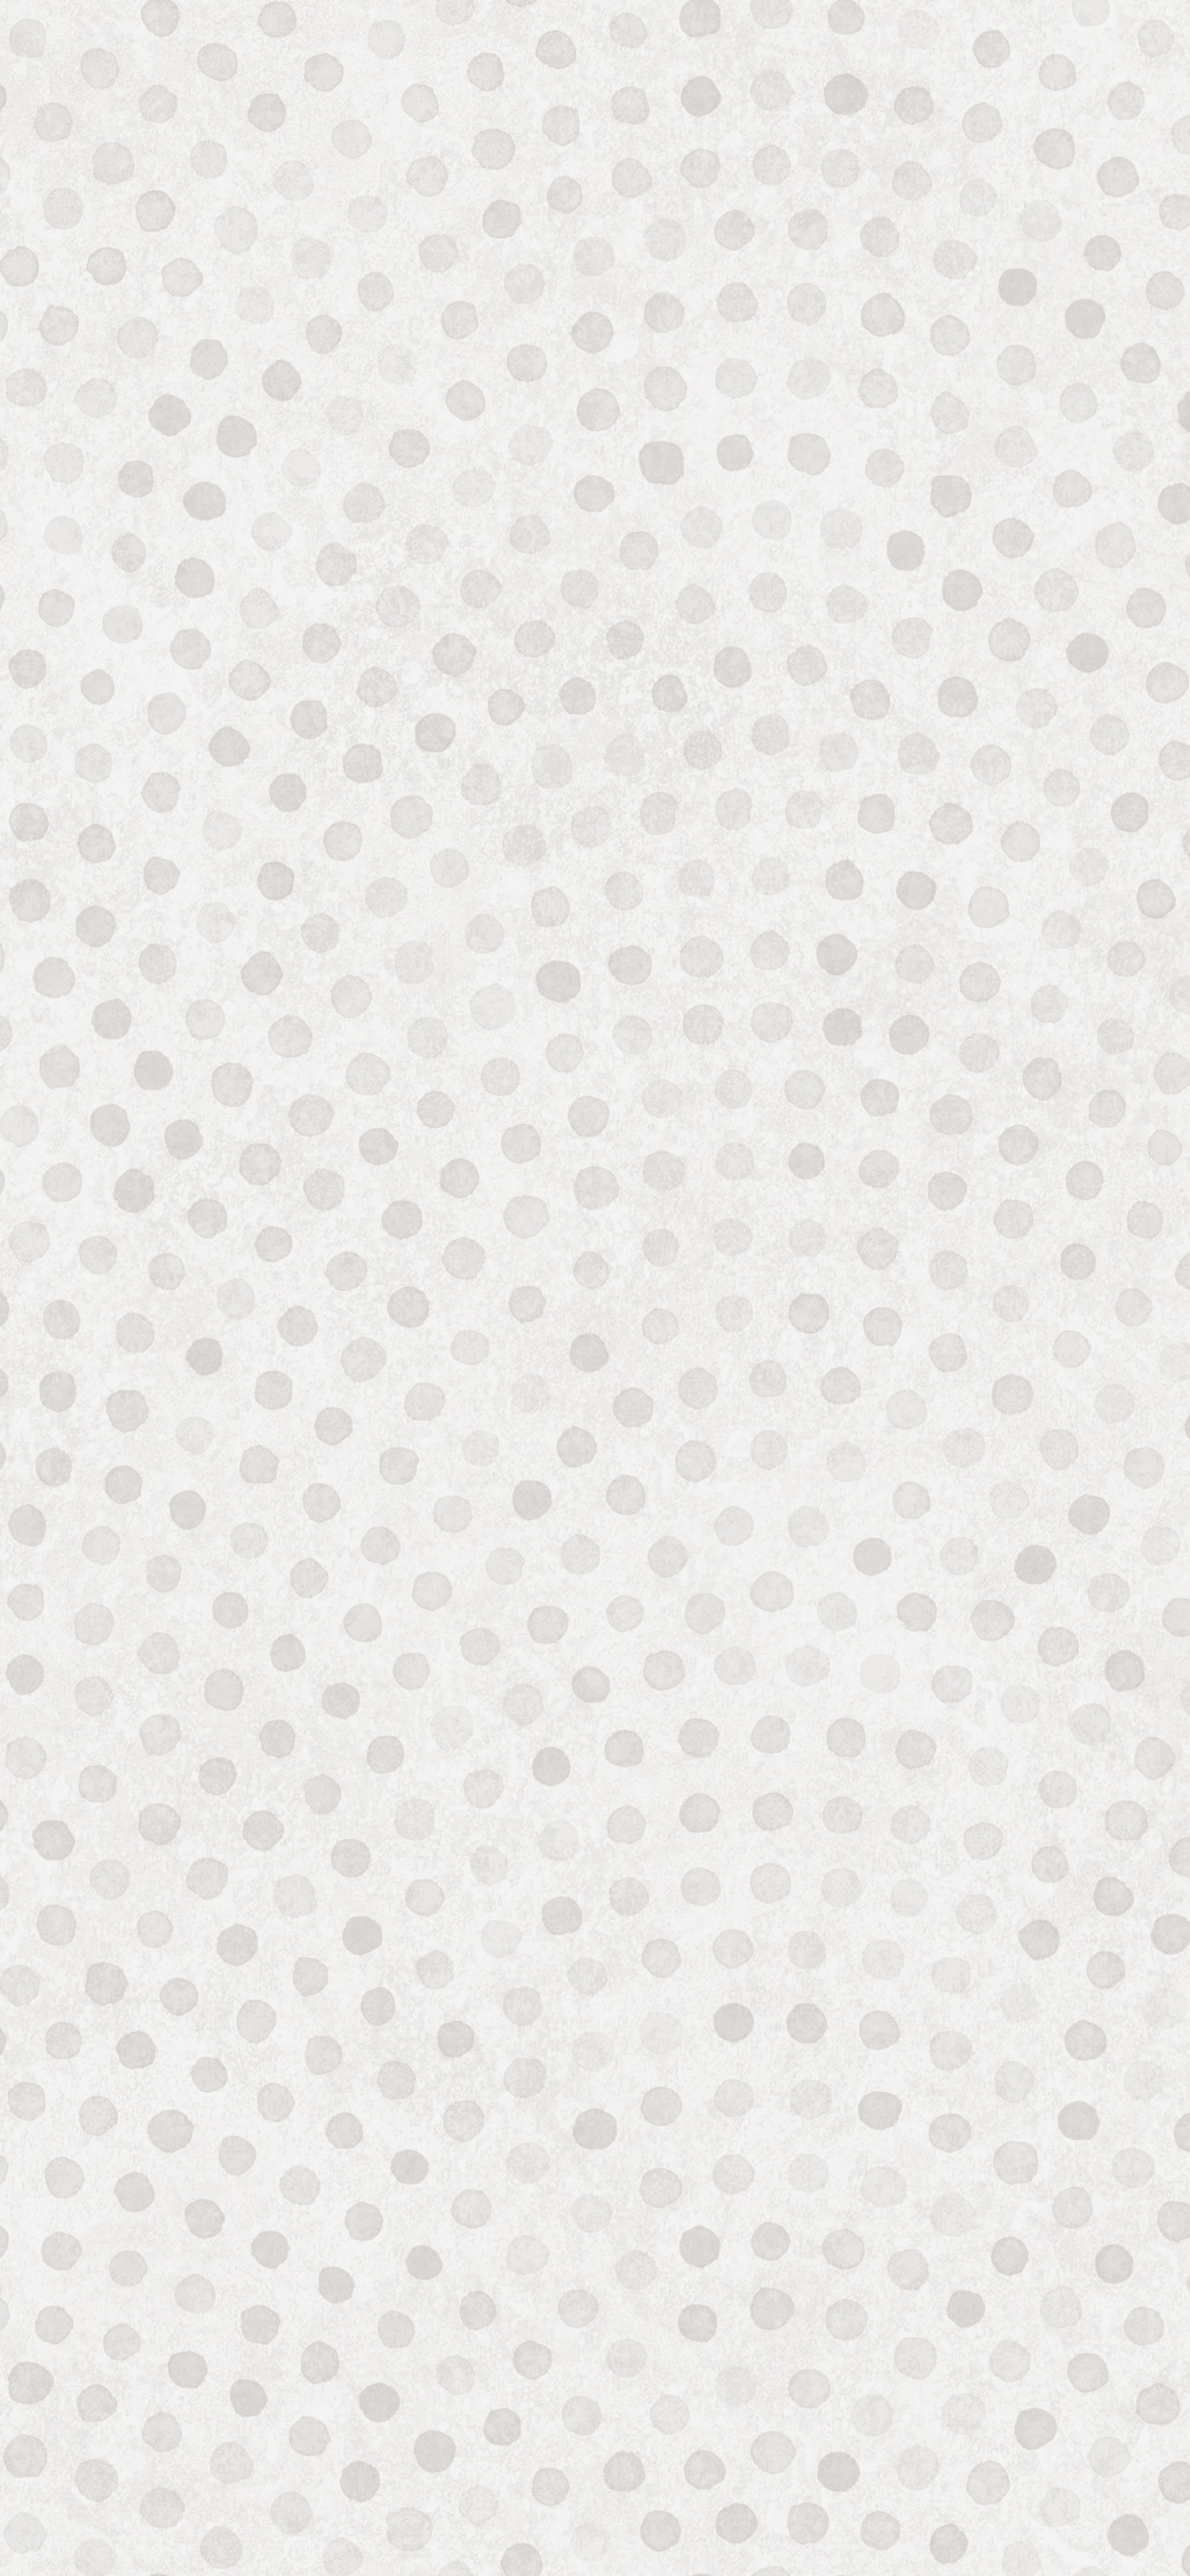 Textile à Pois Blancs et Noirs. Wallpaper in 1242x2688 Resolution